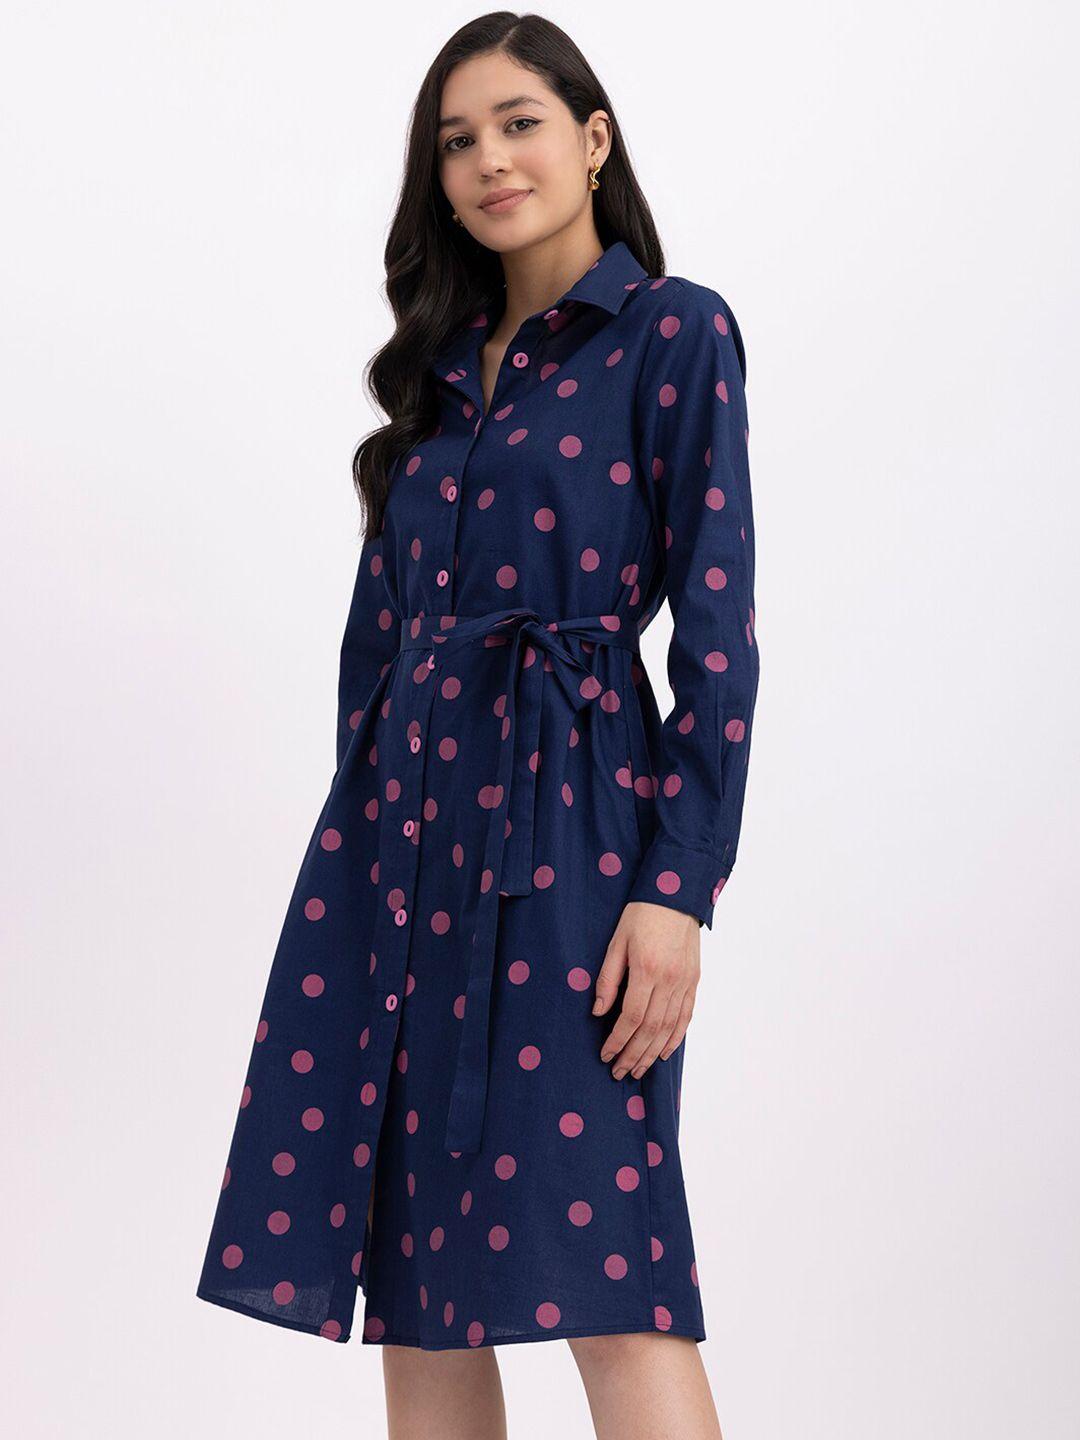 fablestreet-polka-dots-printed-linen-shirt-dress-with-belt